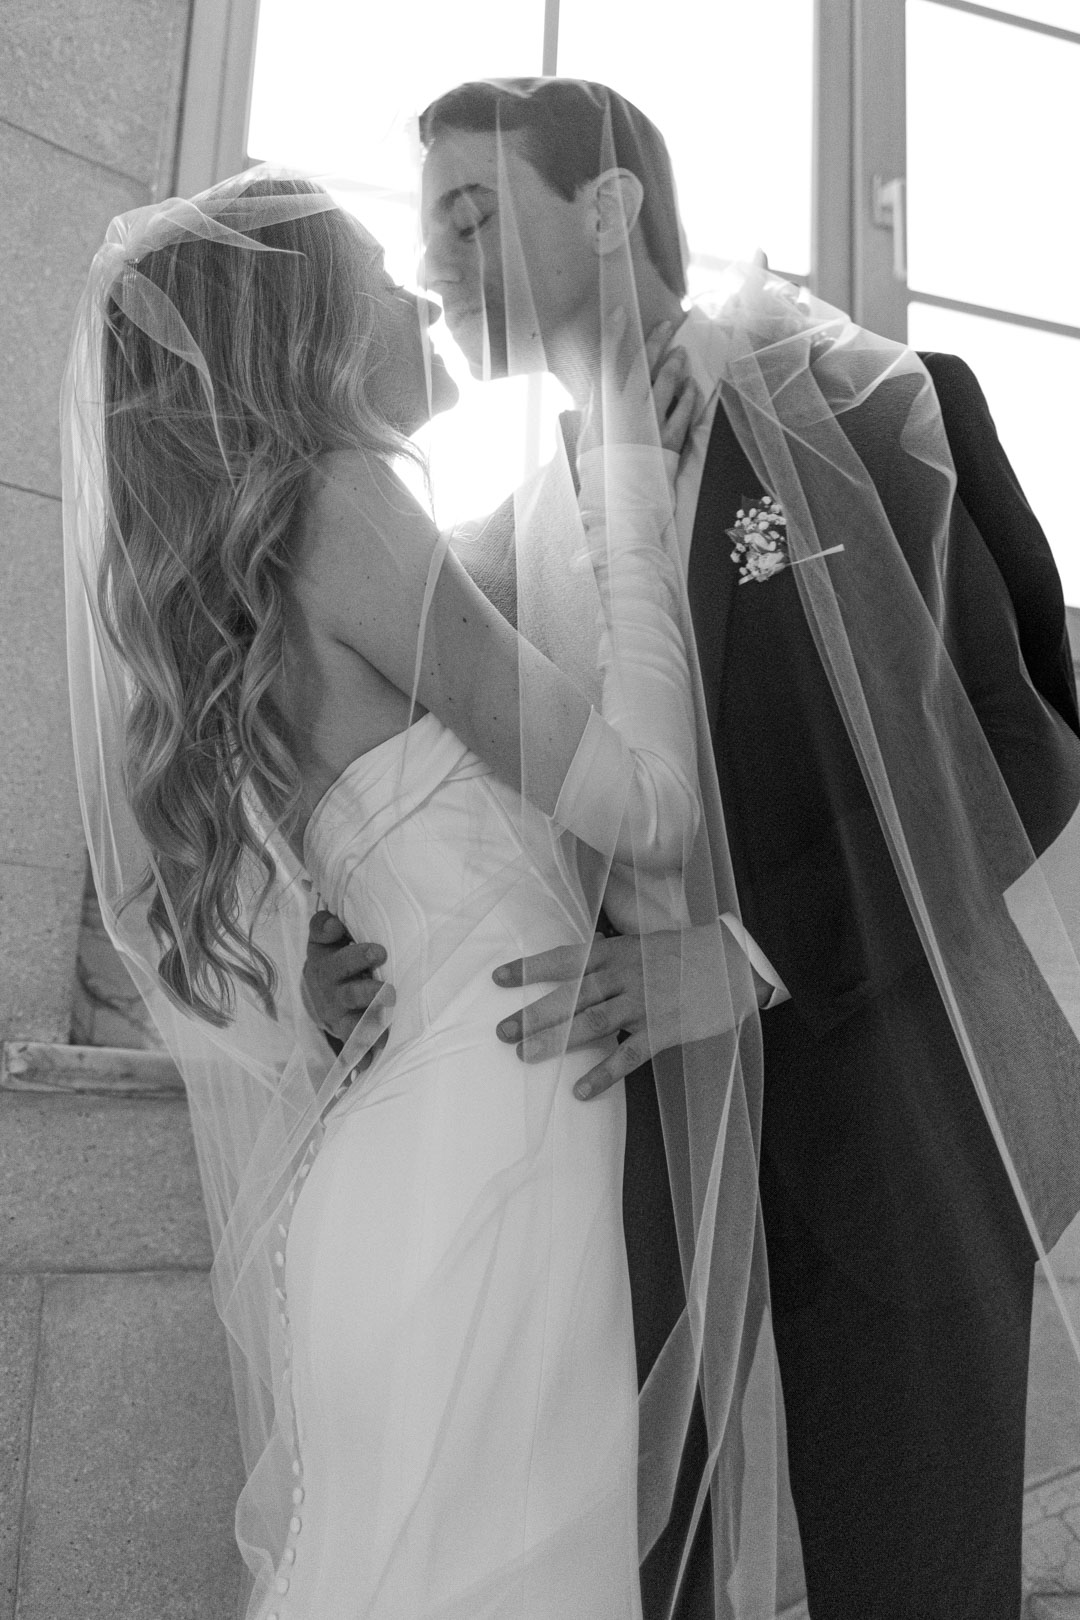 Casamiento, first look, sesion de novios, Alvear palace Hotel, Buenos Aires, Argentina, 54 Fotografía. Fotógrafos de bodas.
Wedding Photography, candid, wedding photographer